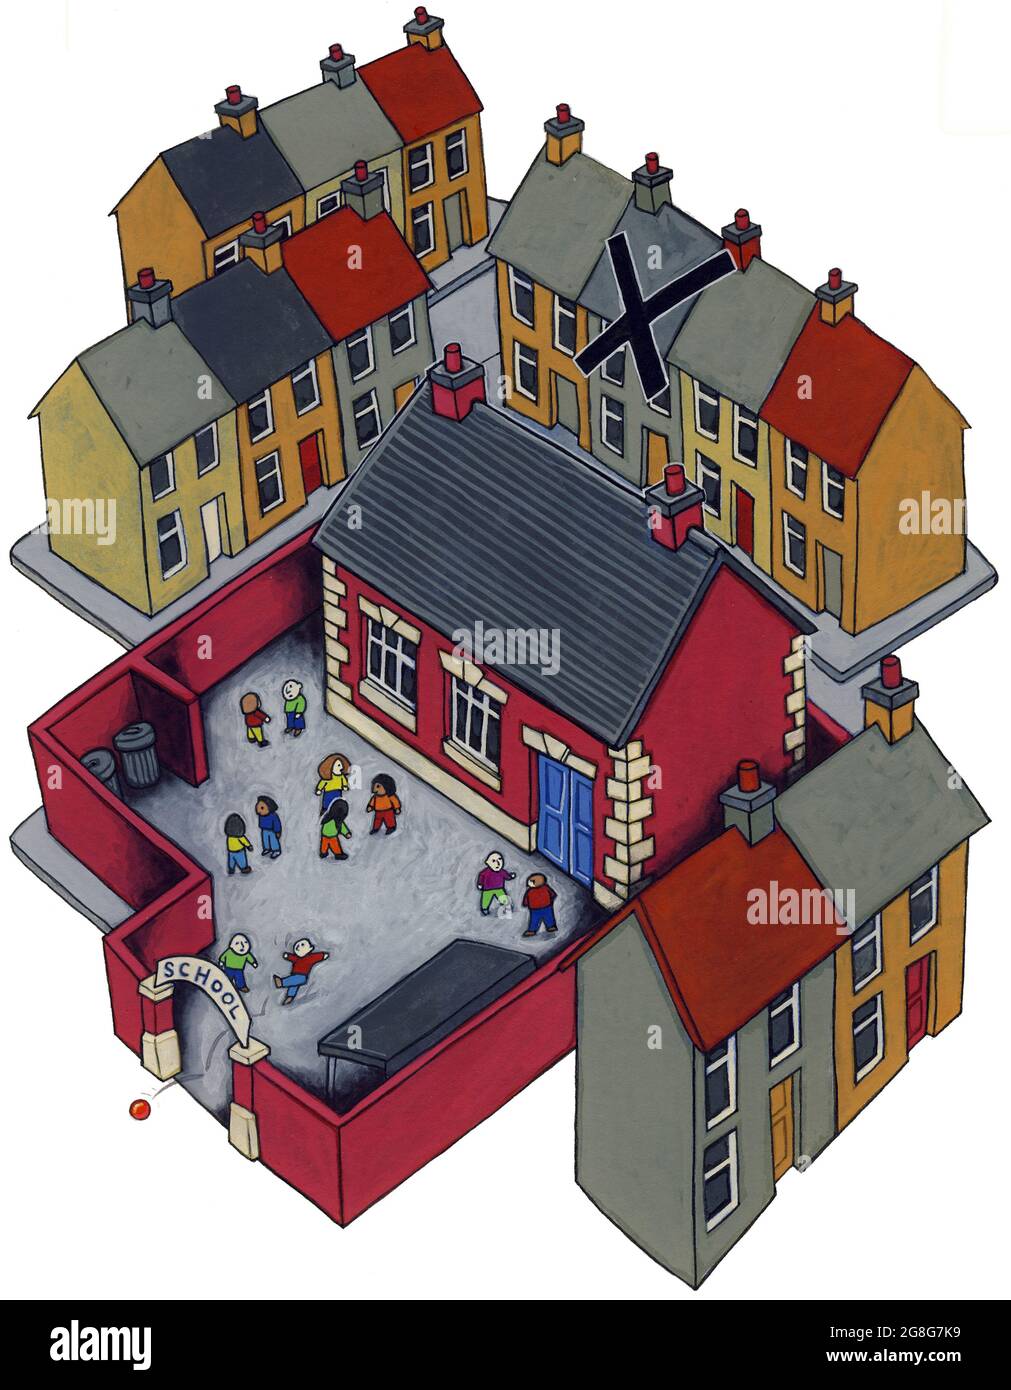 Concept Art Illustration zeigt eine von Häusern umgebene Schule. Ein Haus ist mit einem Kreuz gekennzeichnet, das ausgegrenzten Kindern oder Problemfamilien entspricht. Stockfoto